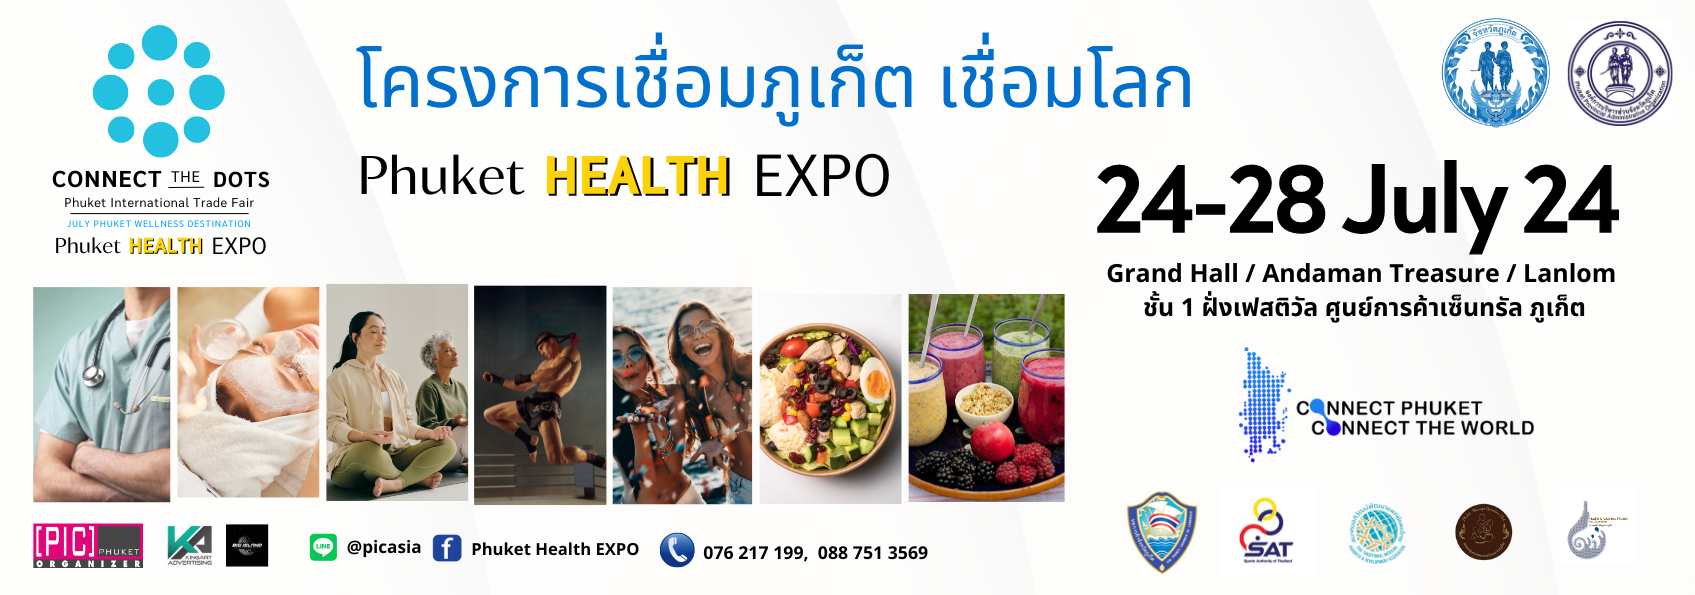 Phuket Health Expo